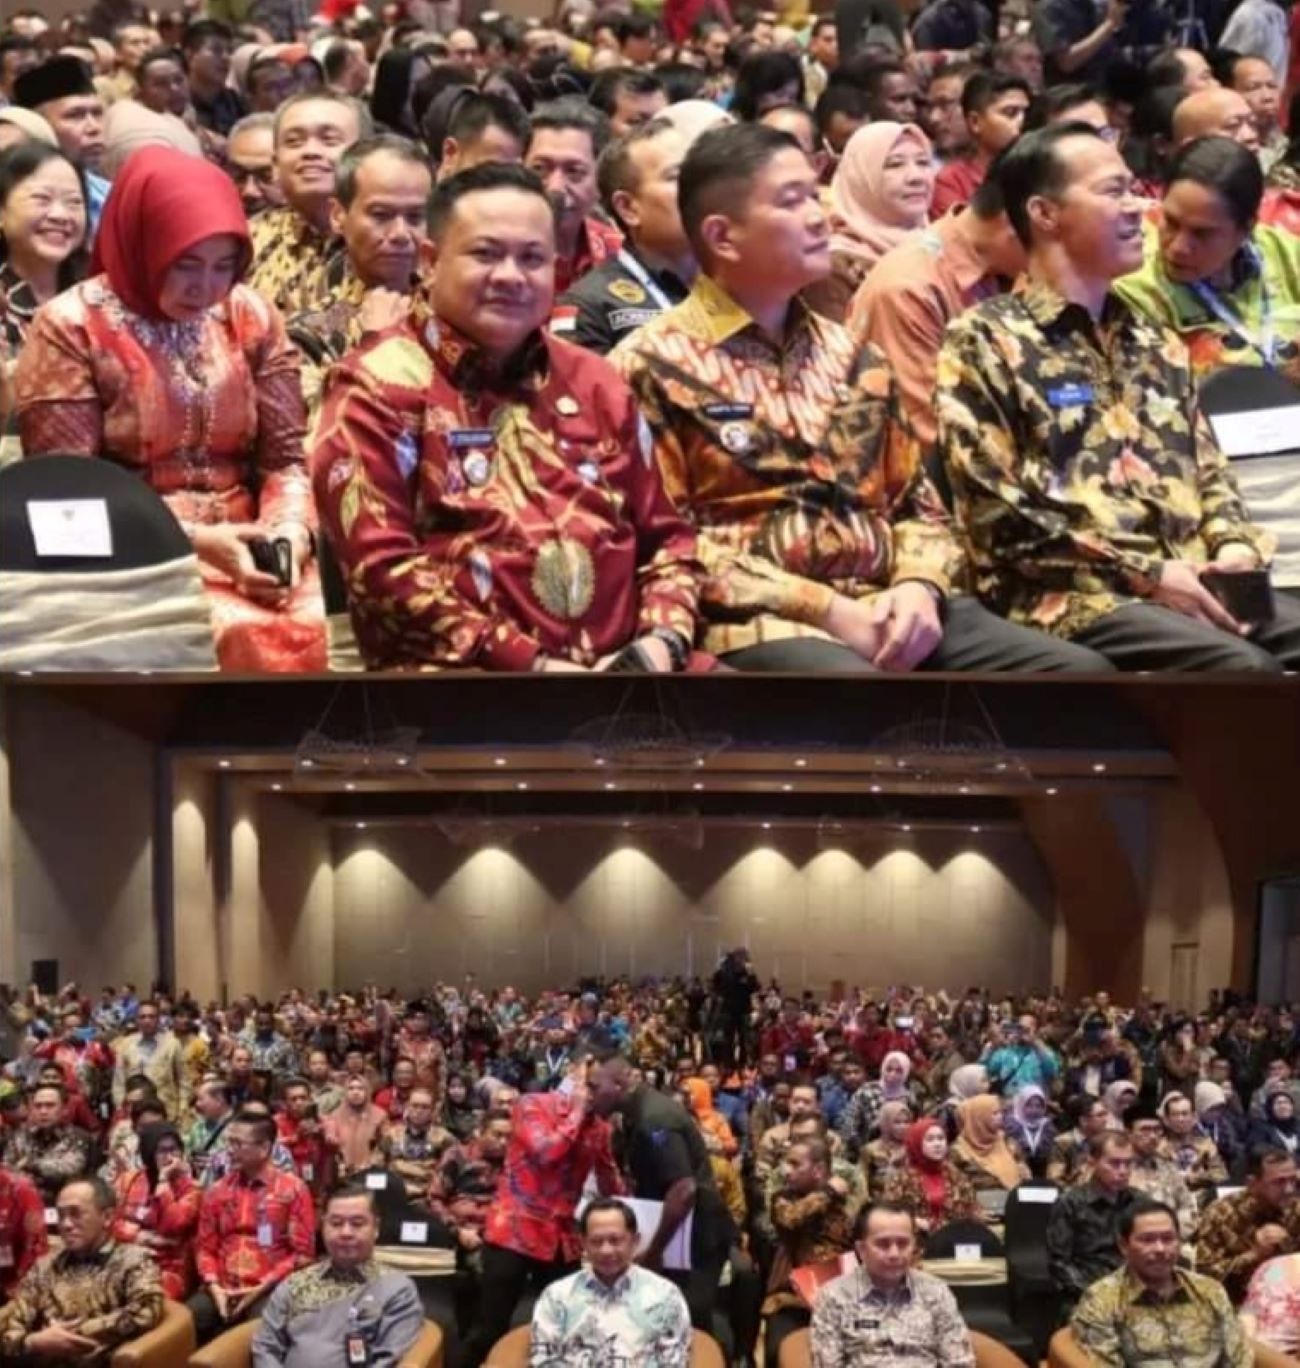 Penguatan Dukcapil dan Pelayanan Publik, Pj Wako Lubuklinggau Hadiri Kegiatan Ini di Palembang